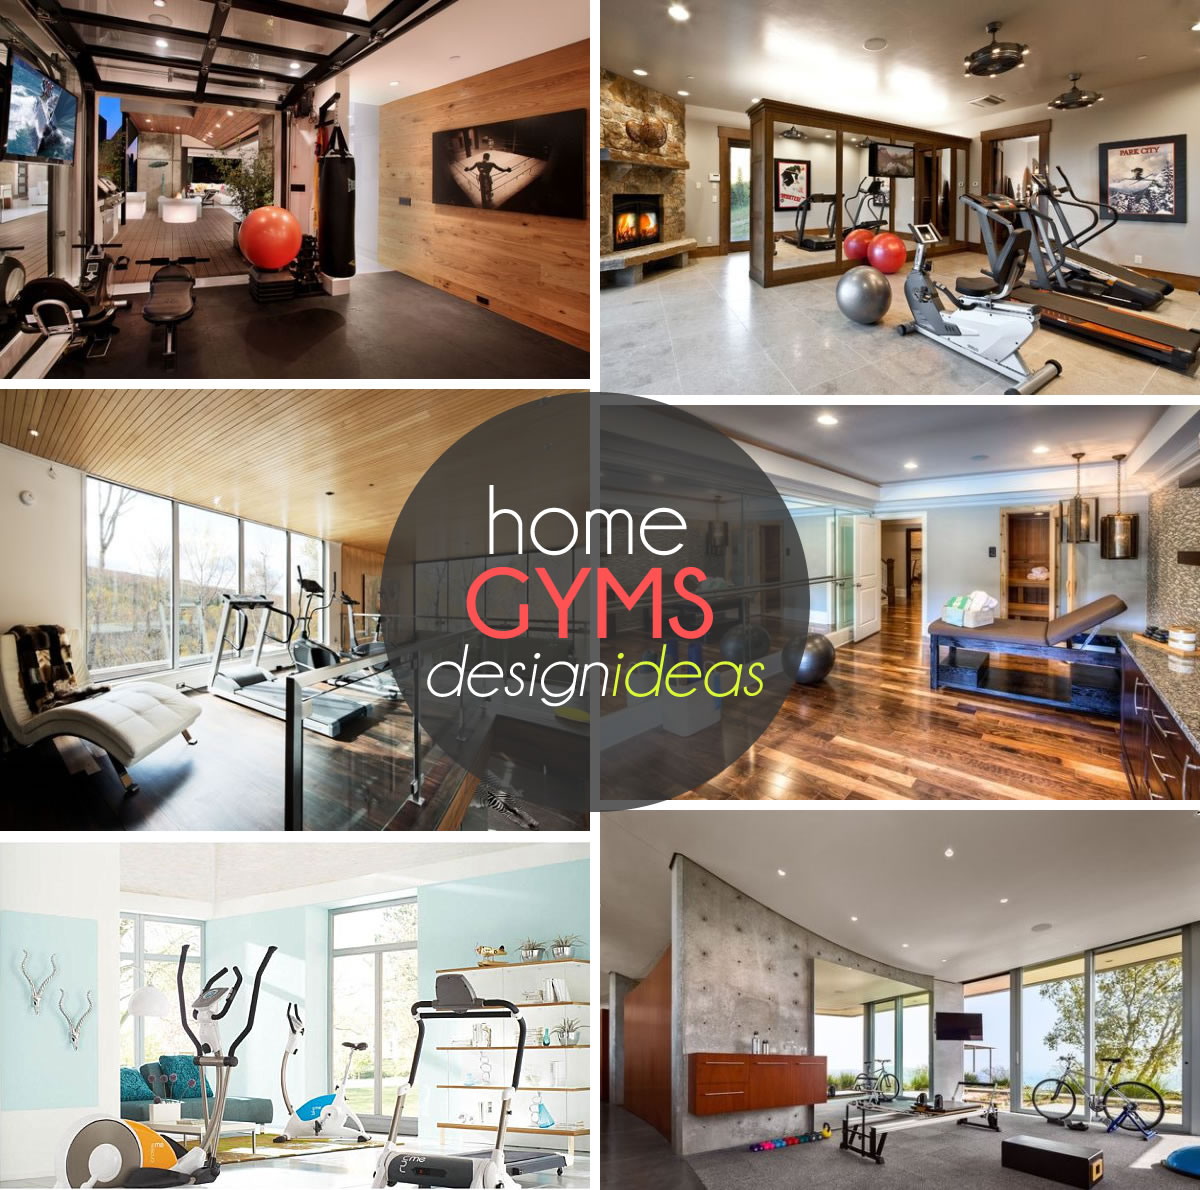 exquisite home gym design ideas 70 Home Gym Design Ideas